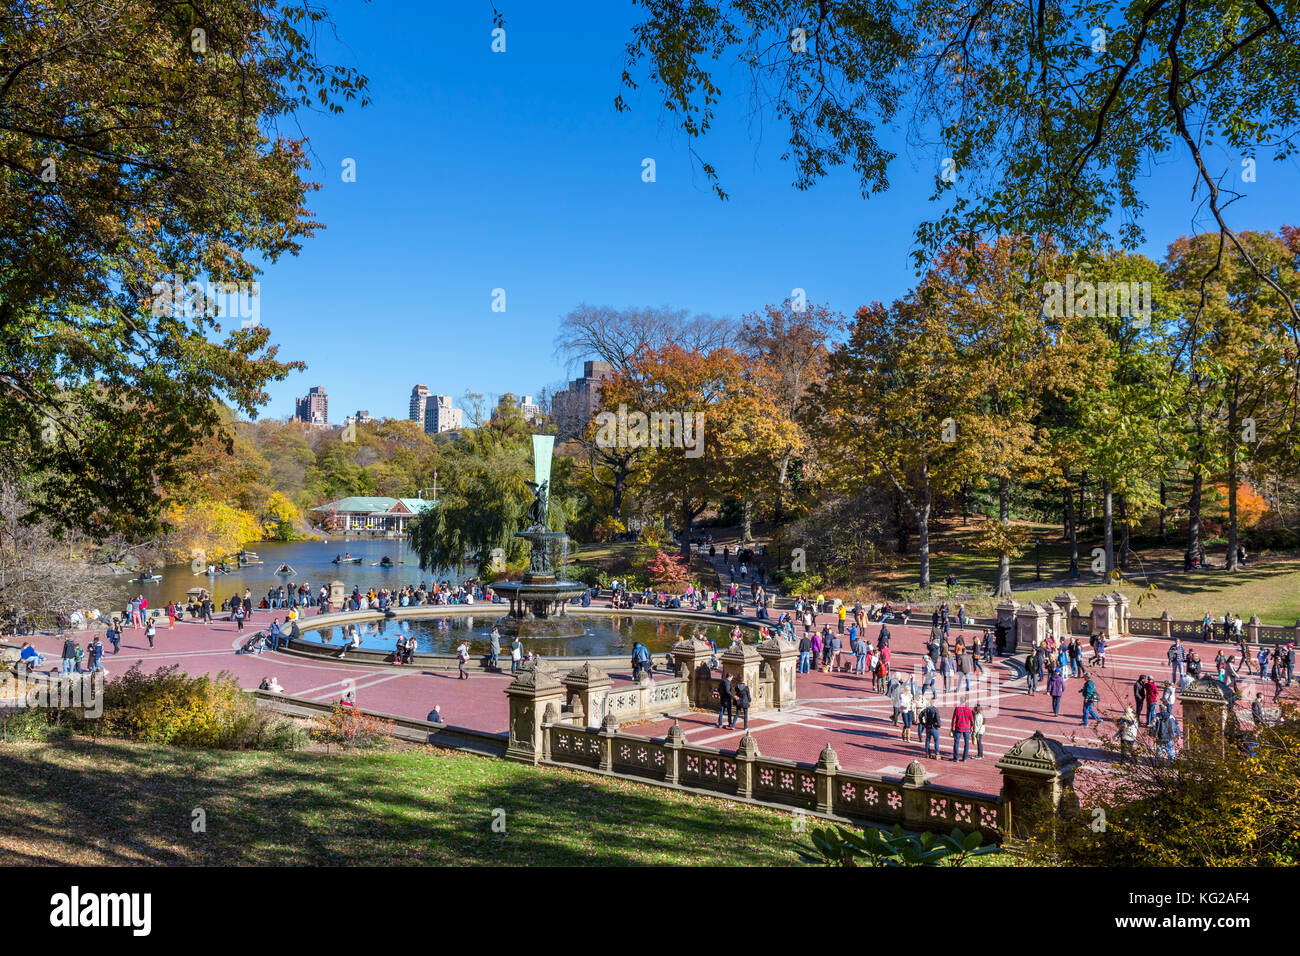 Bethesda Fountain, Central Park, New York City, NY, USA Stock Photo